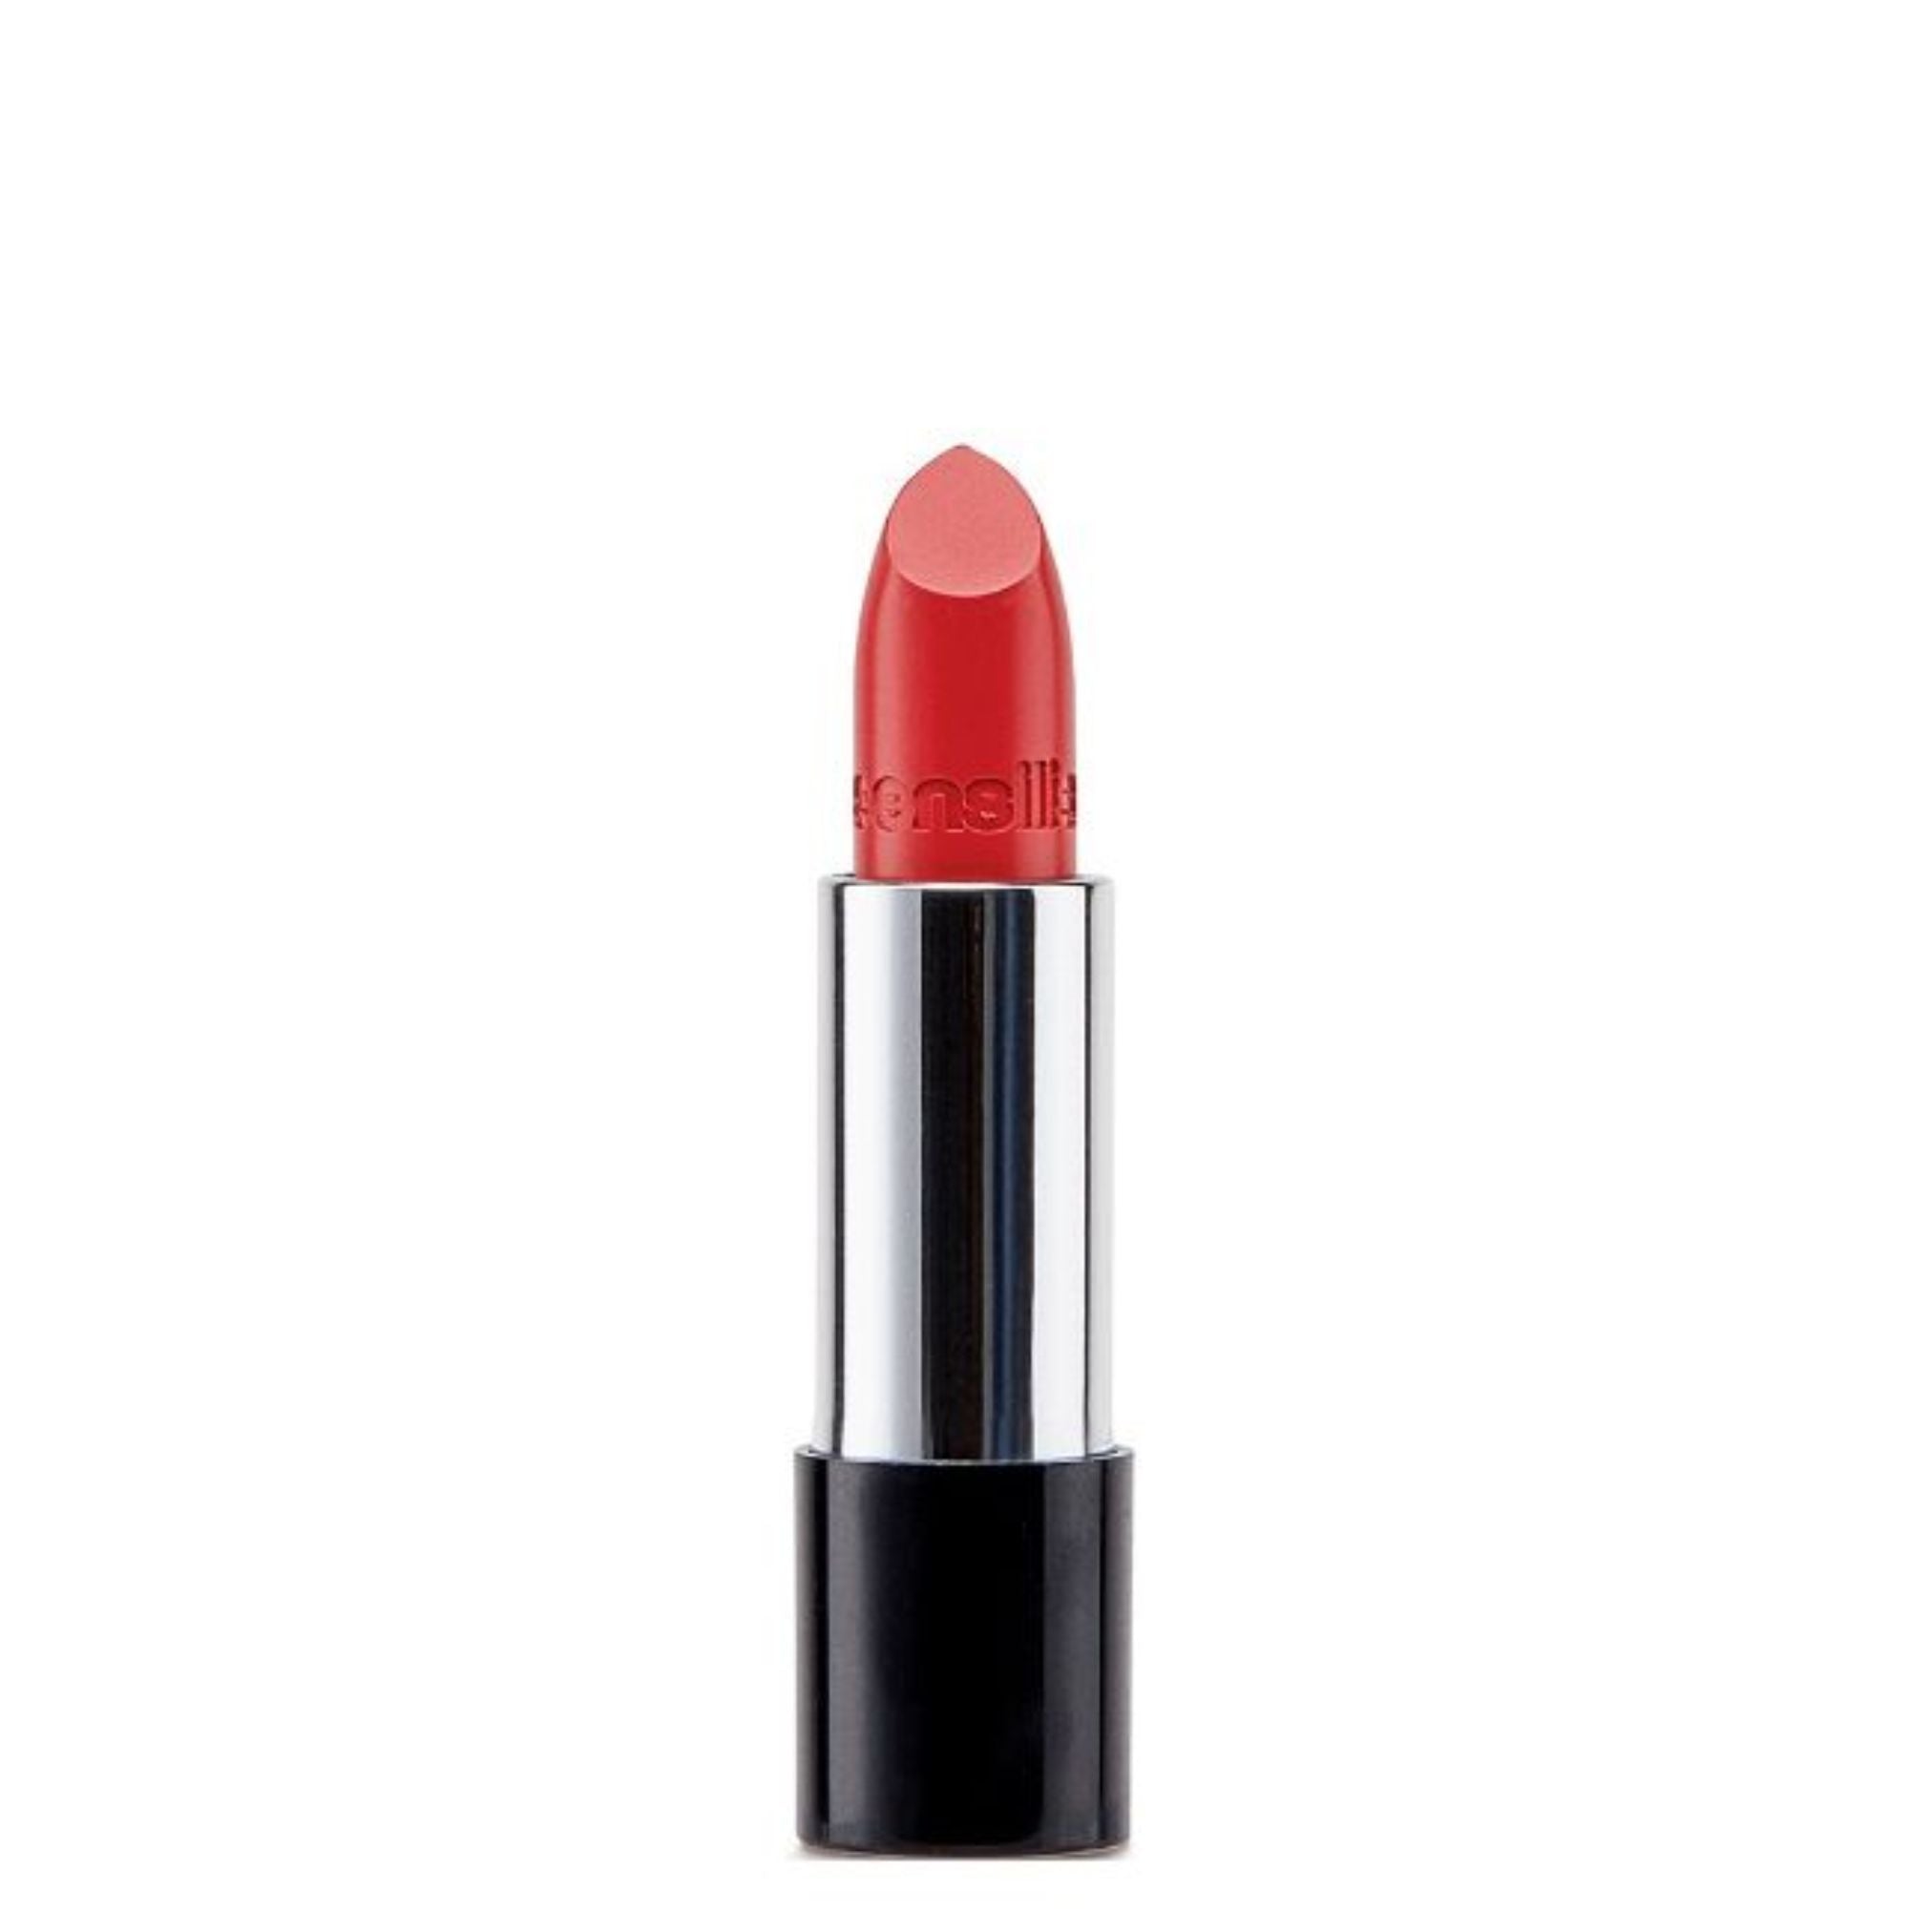 Sensilis Velvet Satin Lipstick 211 Grenadine 3,5ml